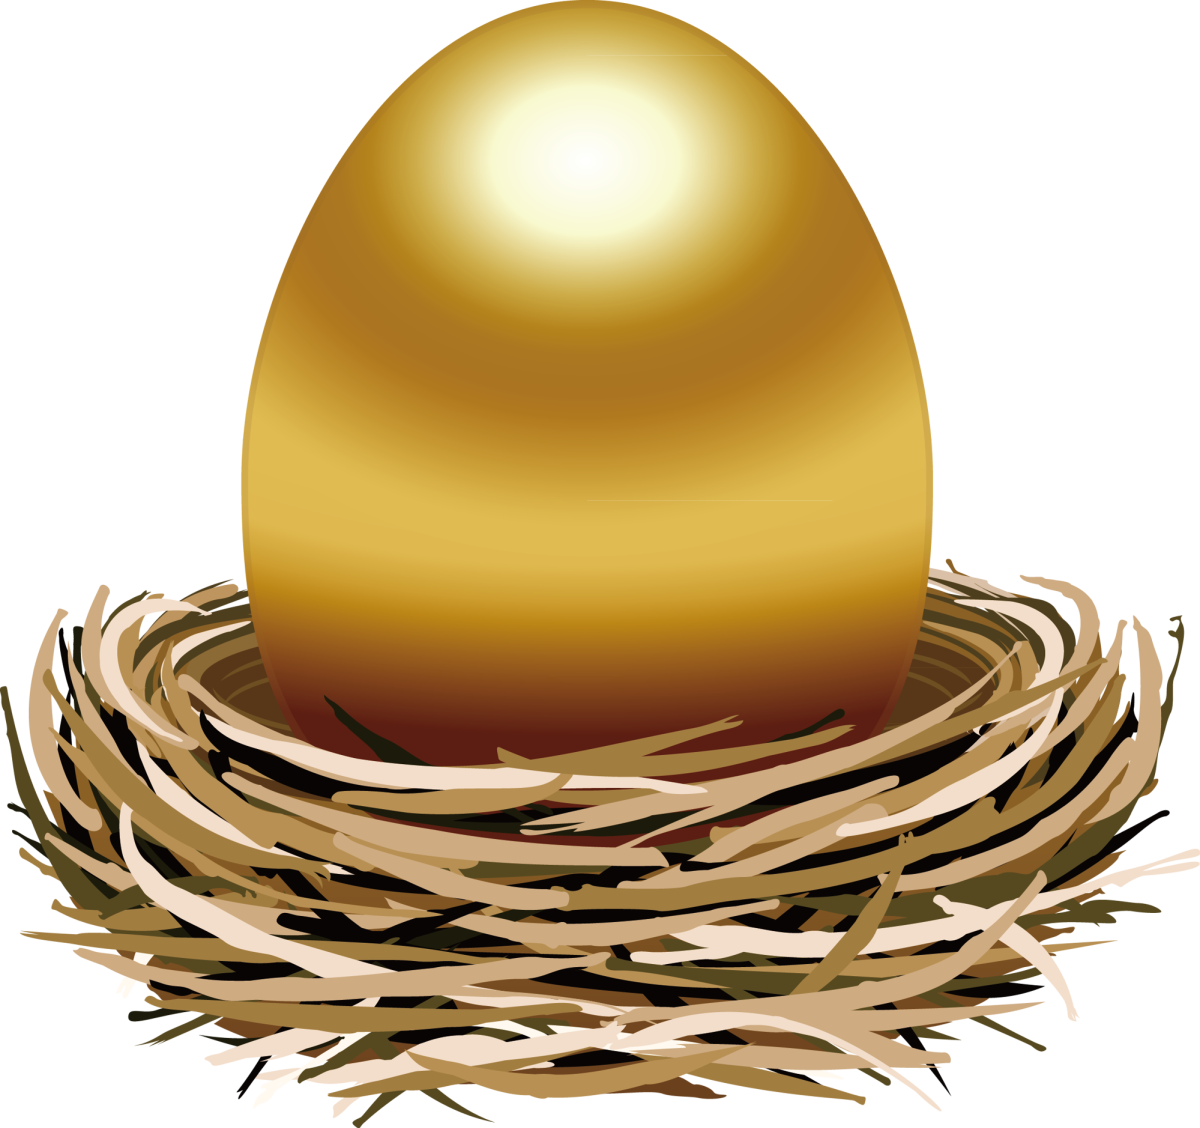 Найдите золотое яйцо. Золотое яичко Курочка Ряба. Золотое яйцо курочки Рябы. Сказка Курочка Ряба золотое яйцо. Золотое яичко из сказки Курочка Ряба.